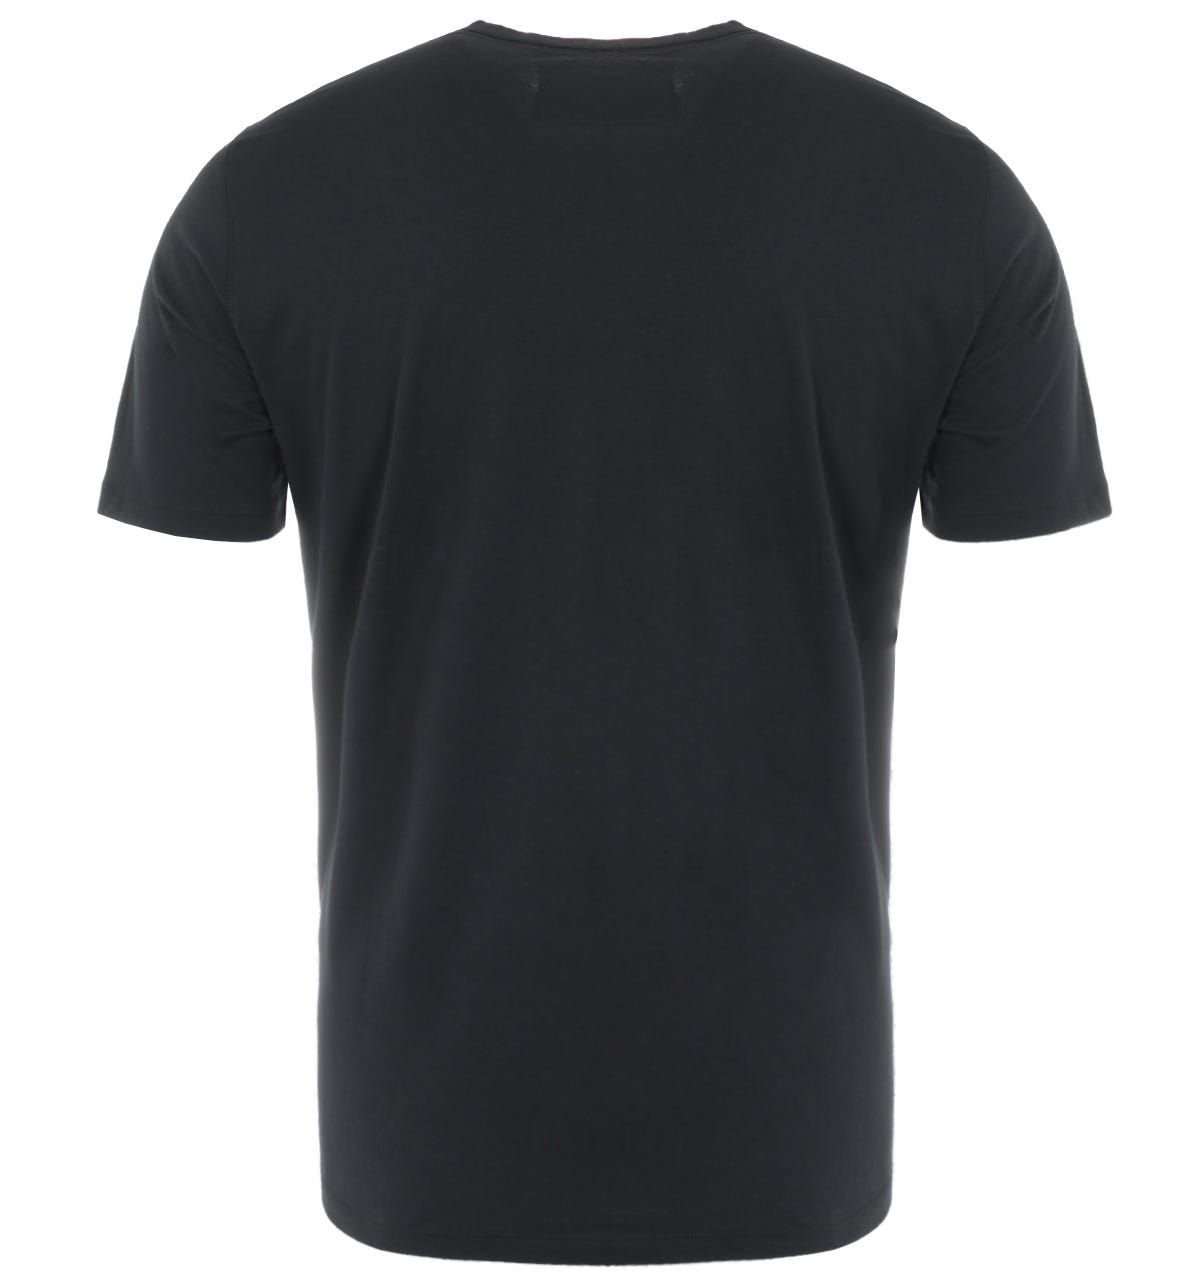 True Religion Brand California U.S Logo T-Shirt - Black